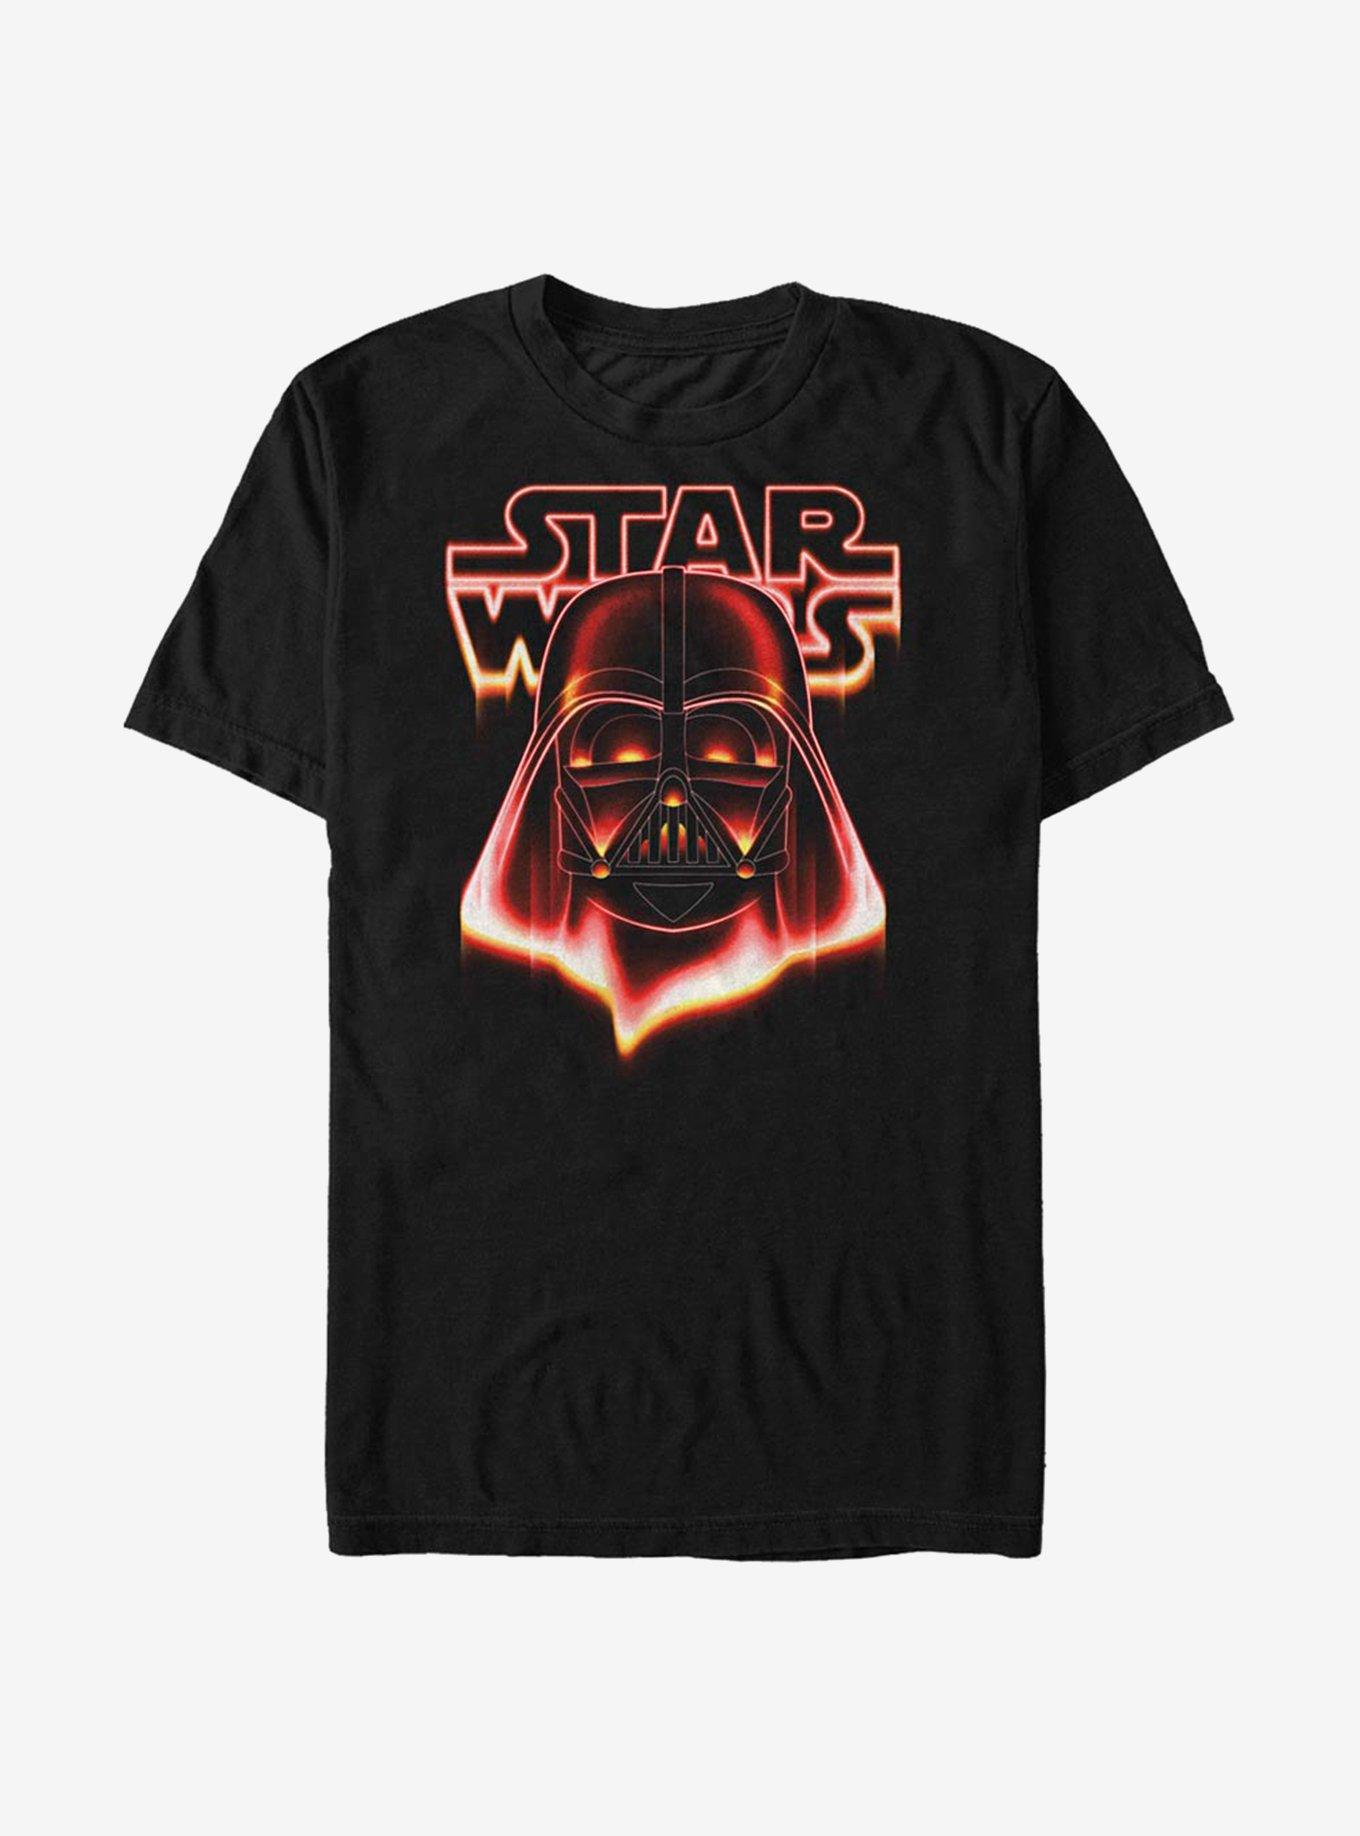 Star Wars Fire Vader T-Shirt, BLACK, hi-res